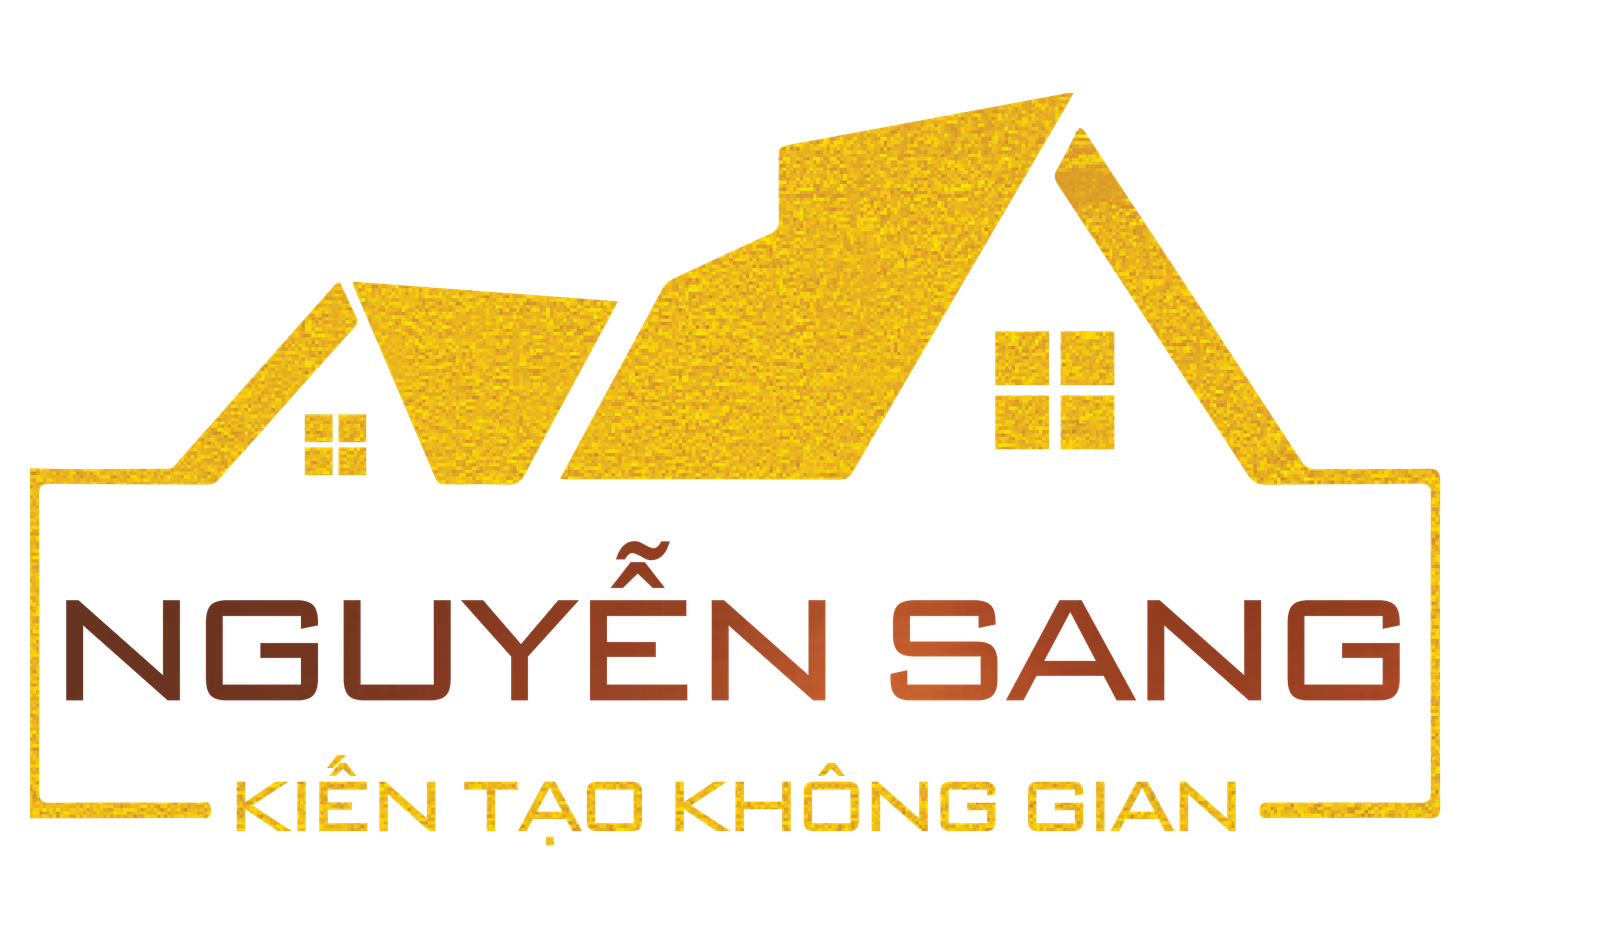 Trang trí nội thất Nguyễn Sang